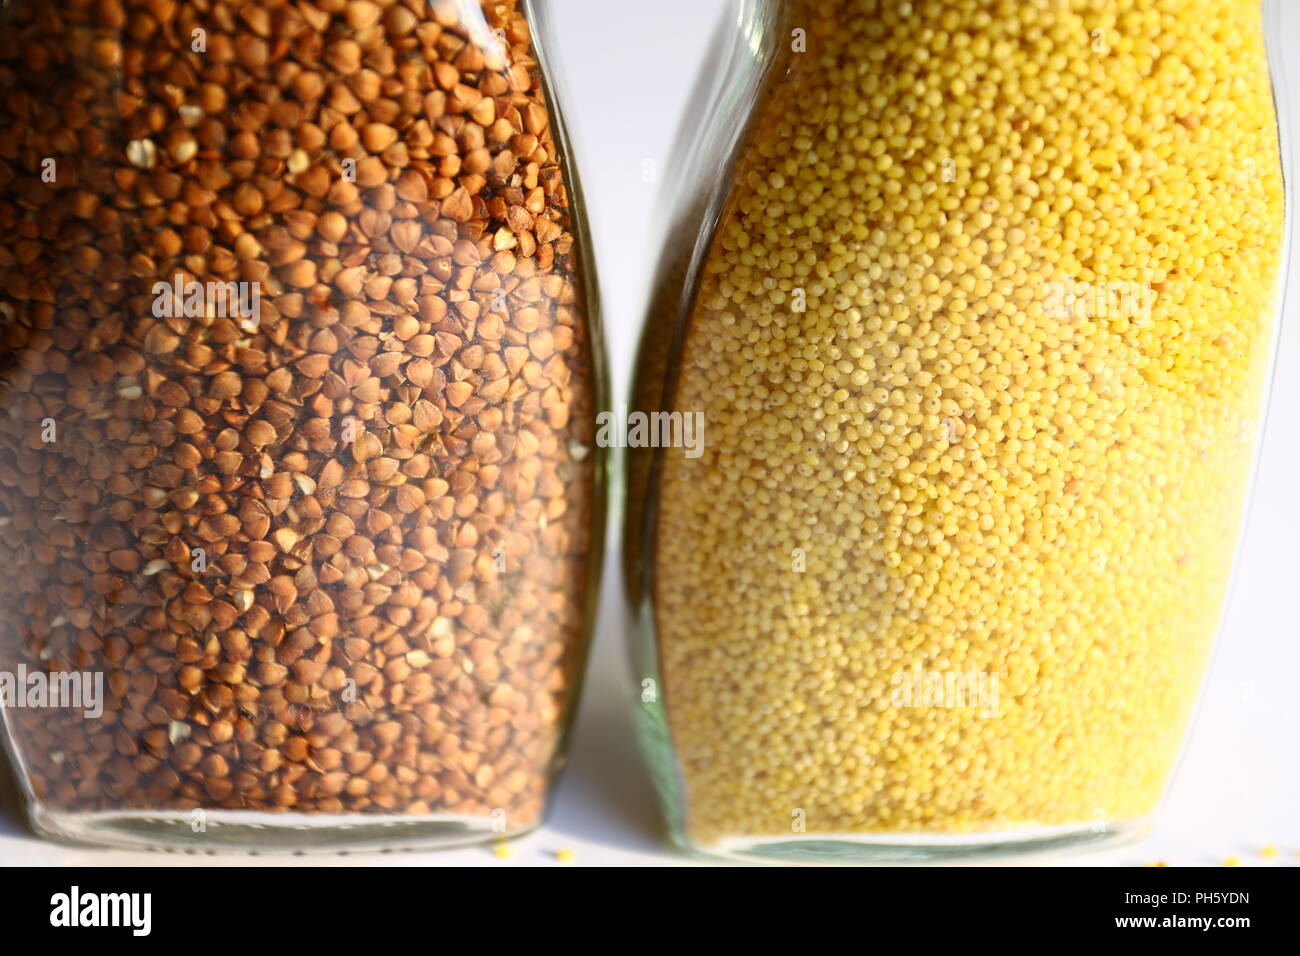 L'alimentation : le millet et le sarrasin Banque D'Images